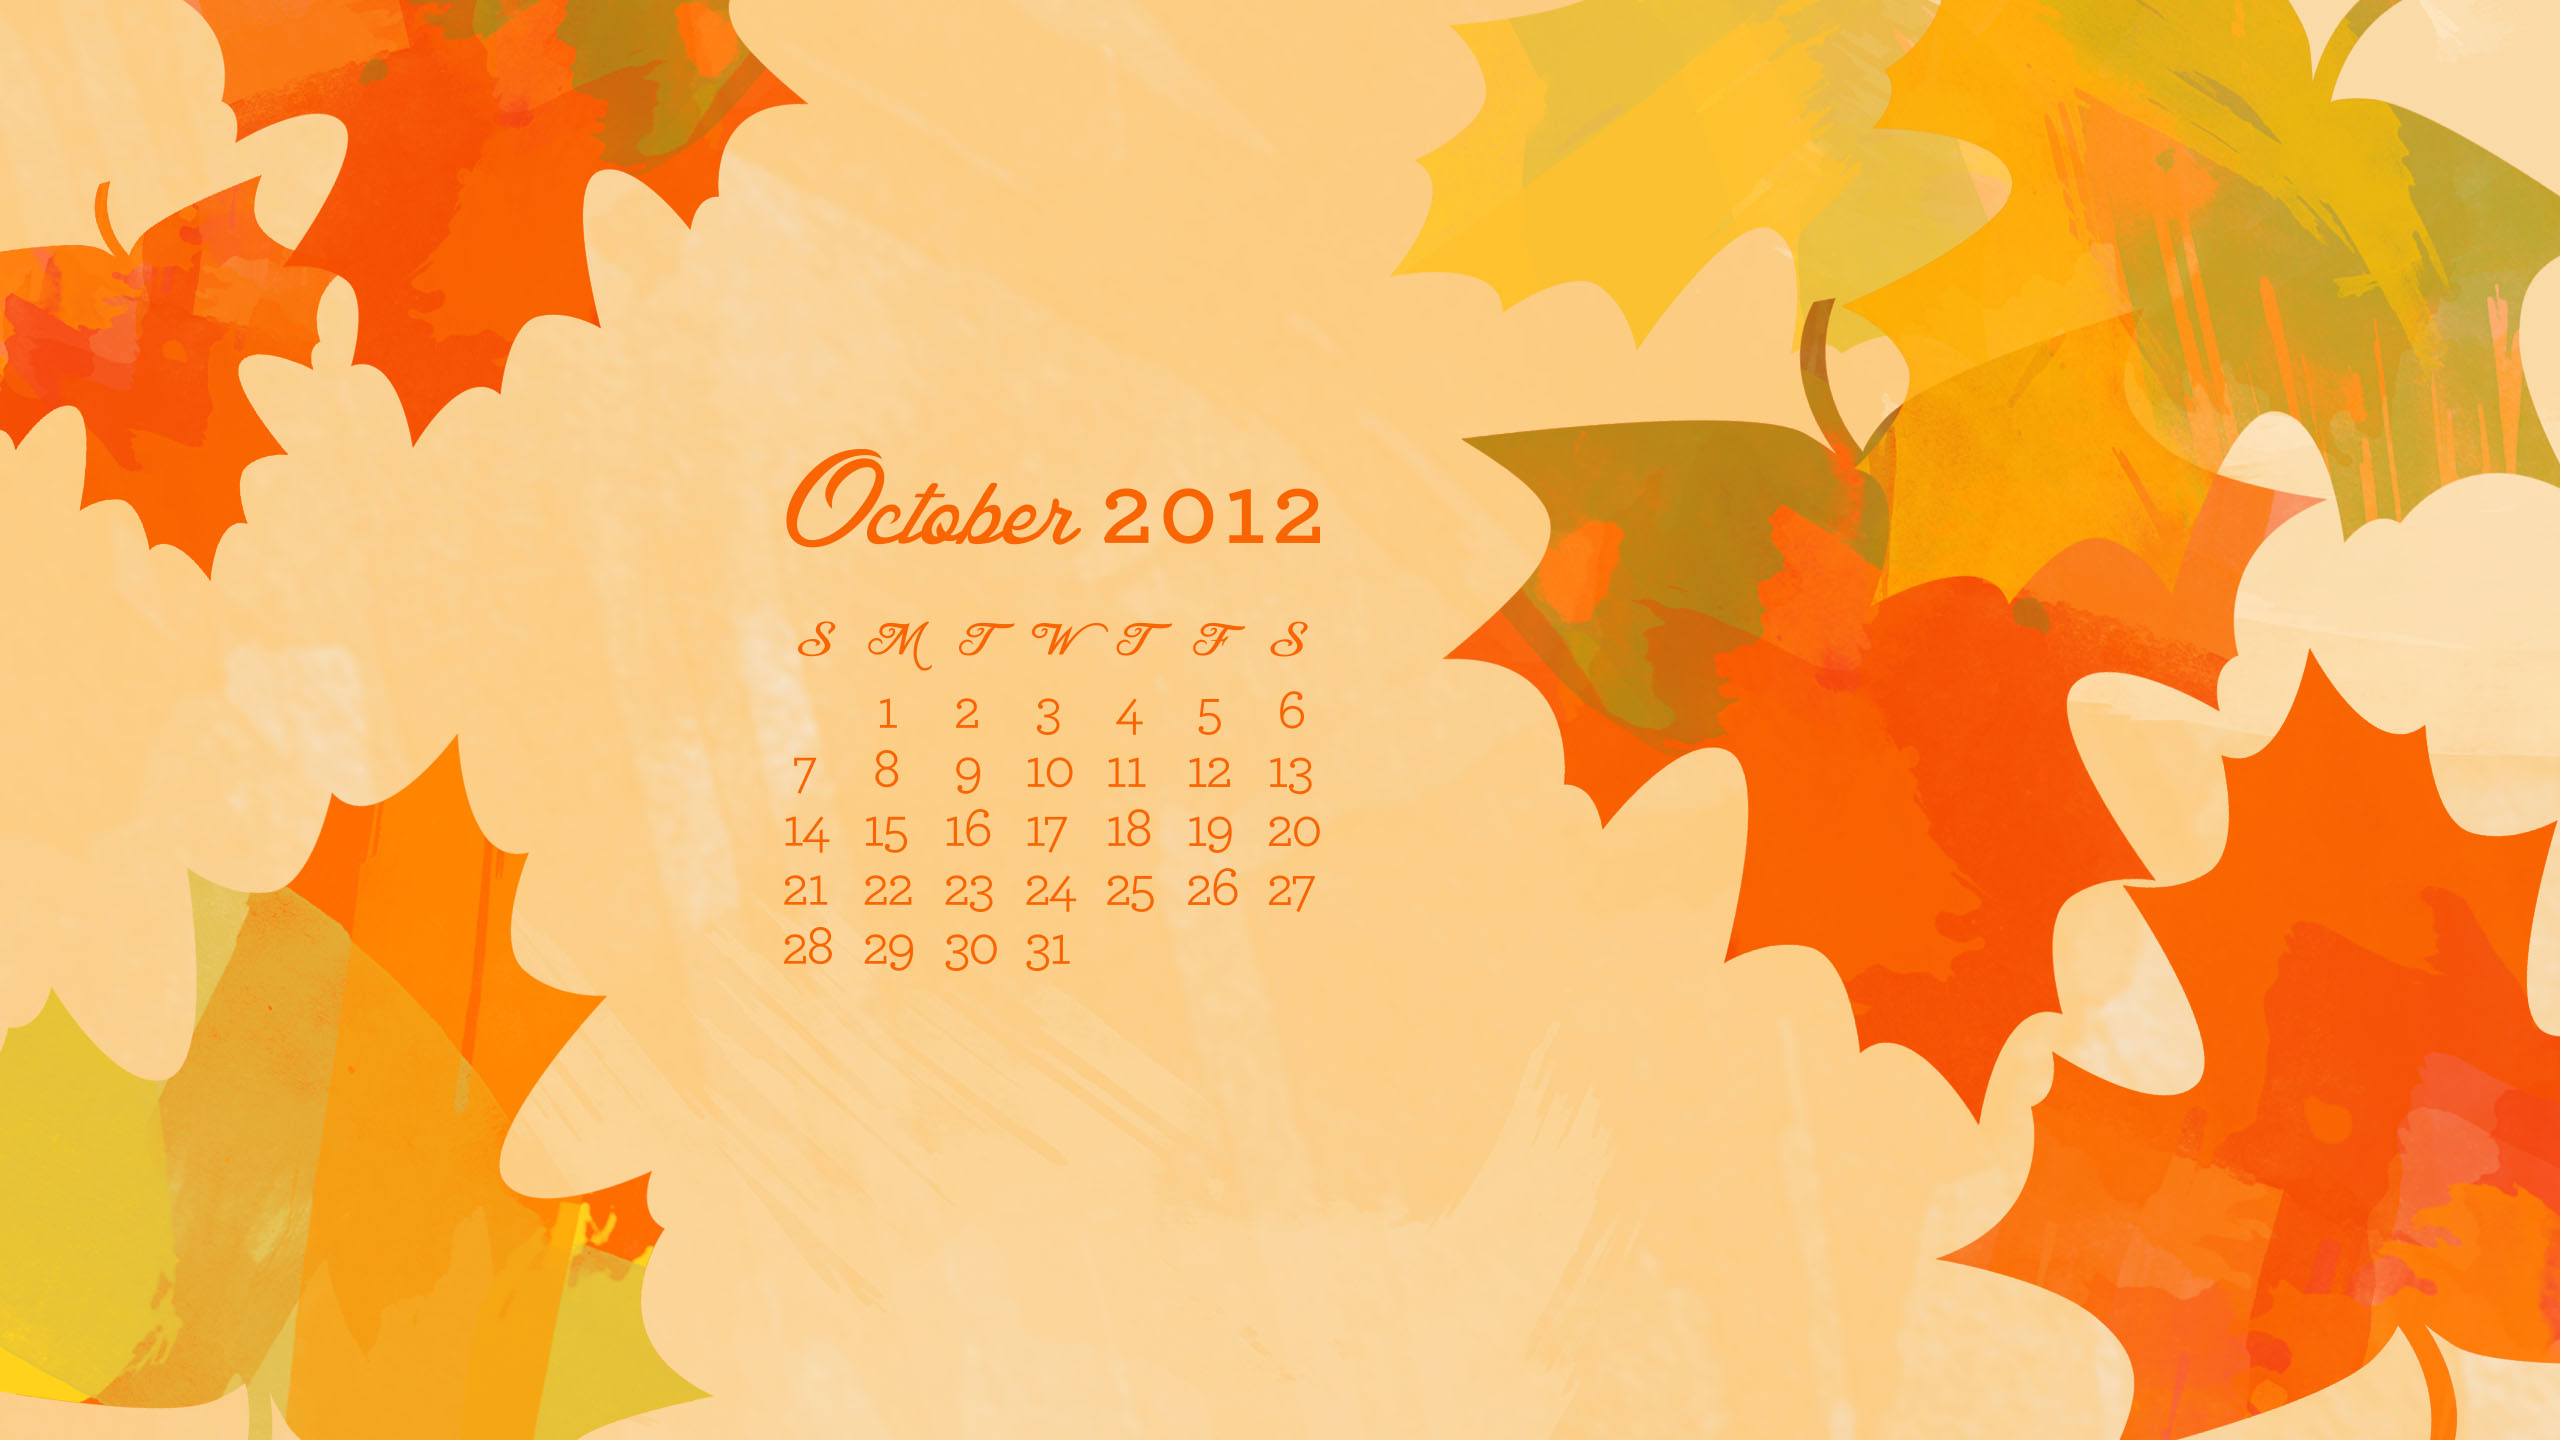 1920 x 1280 1920 x 1280 with calendar